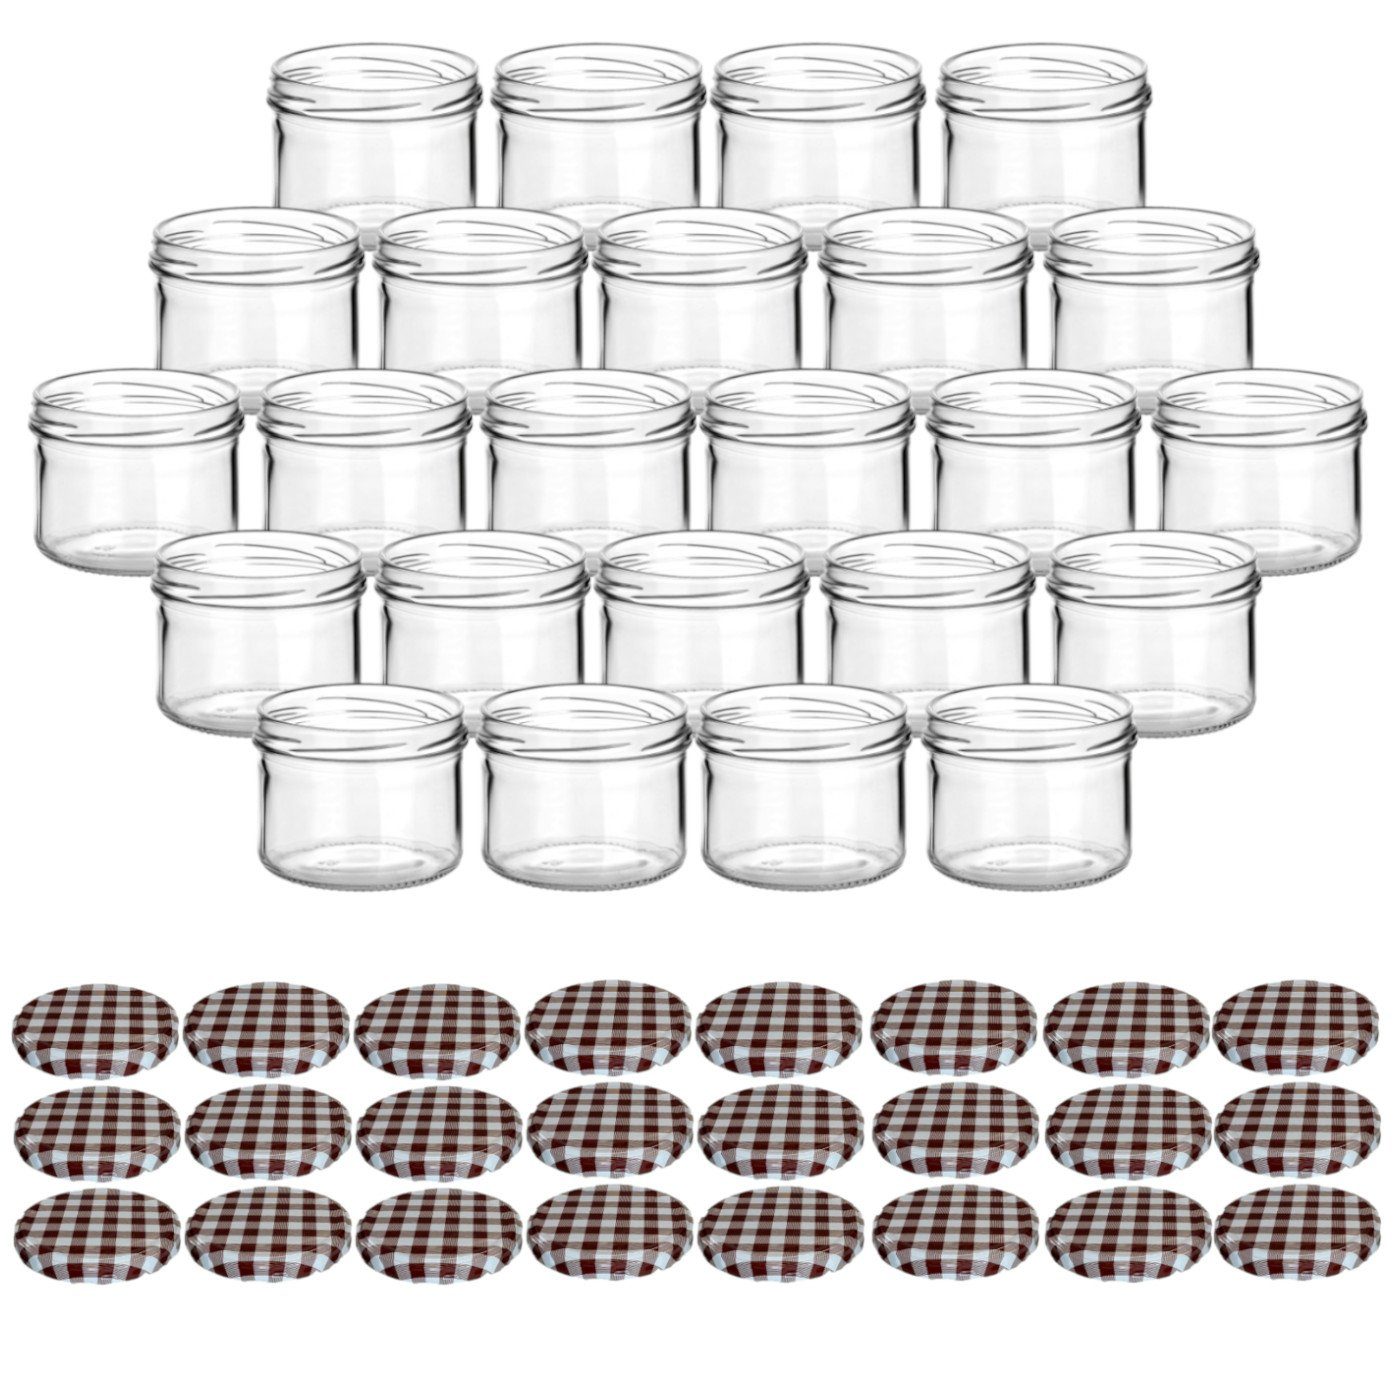 gouveo Einmachglas Vorratsgläser 230 ml rund mit Schraubverschluss TO 82, (24 Stück, Karo-Braun), Gläser für Selbstgemachtes, Marmelade, Wurst